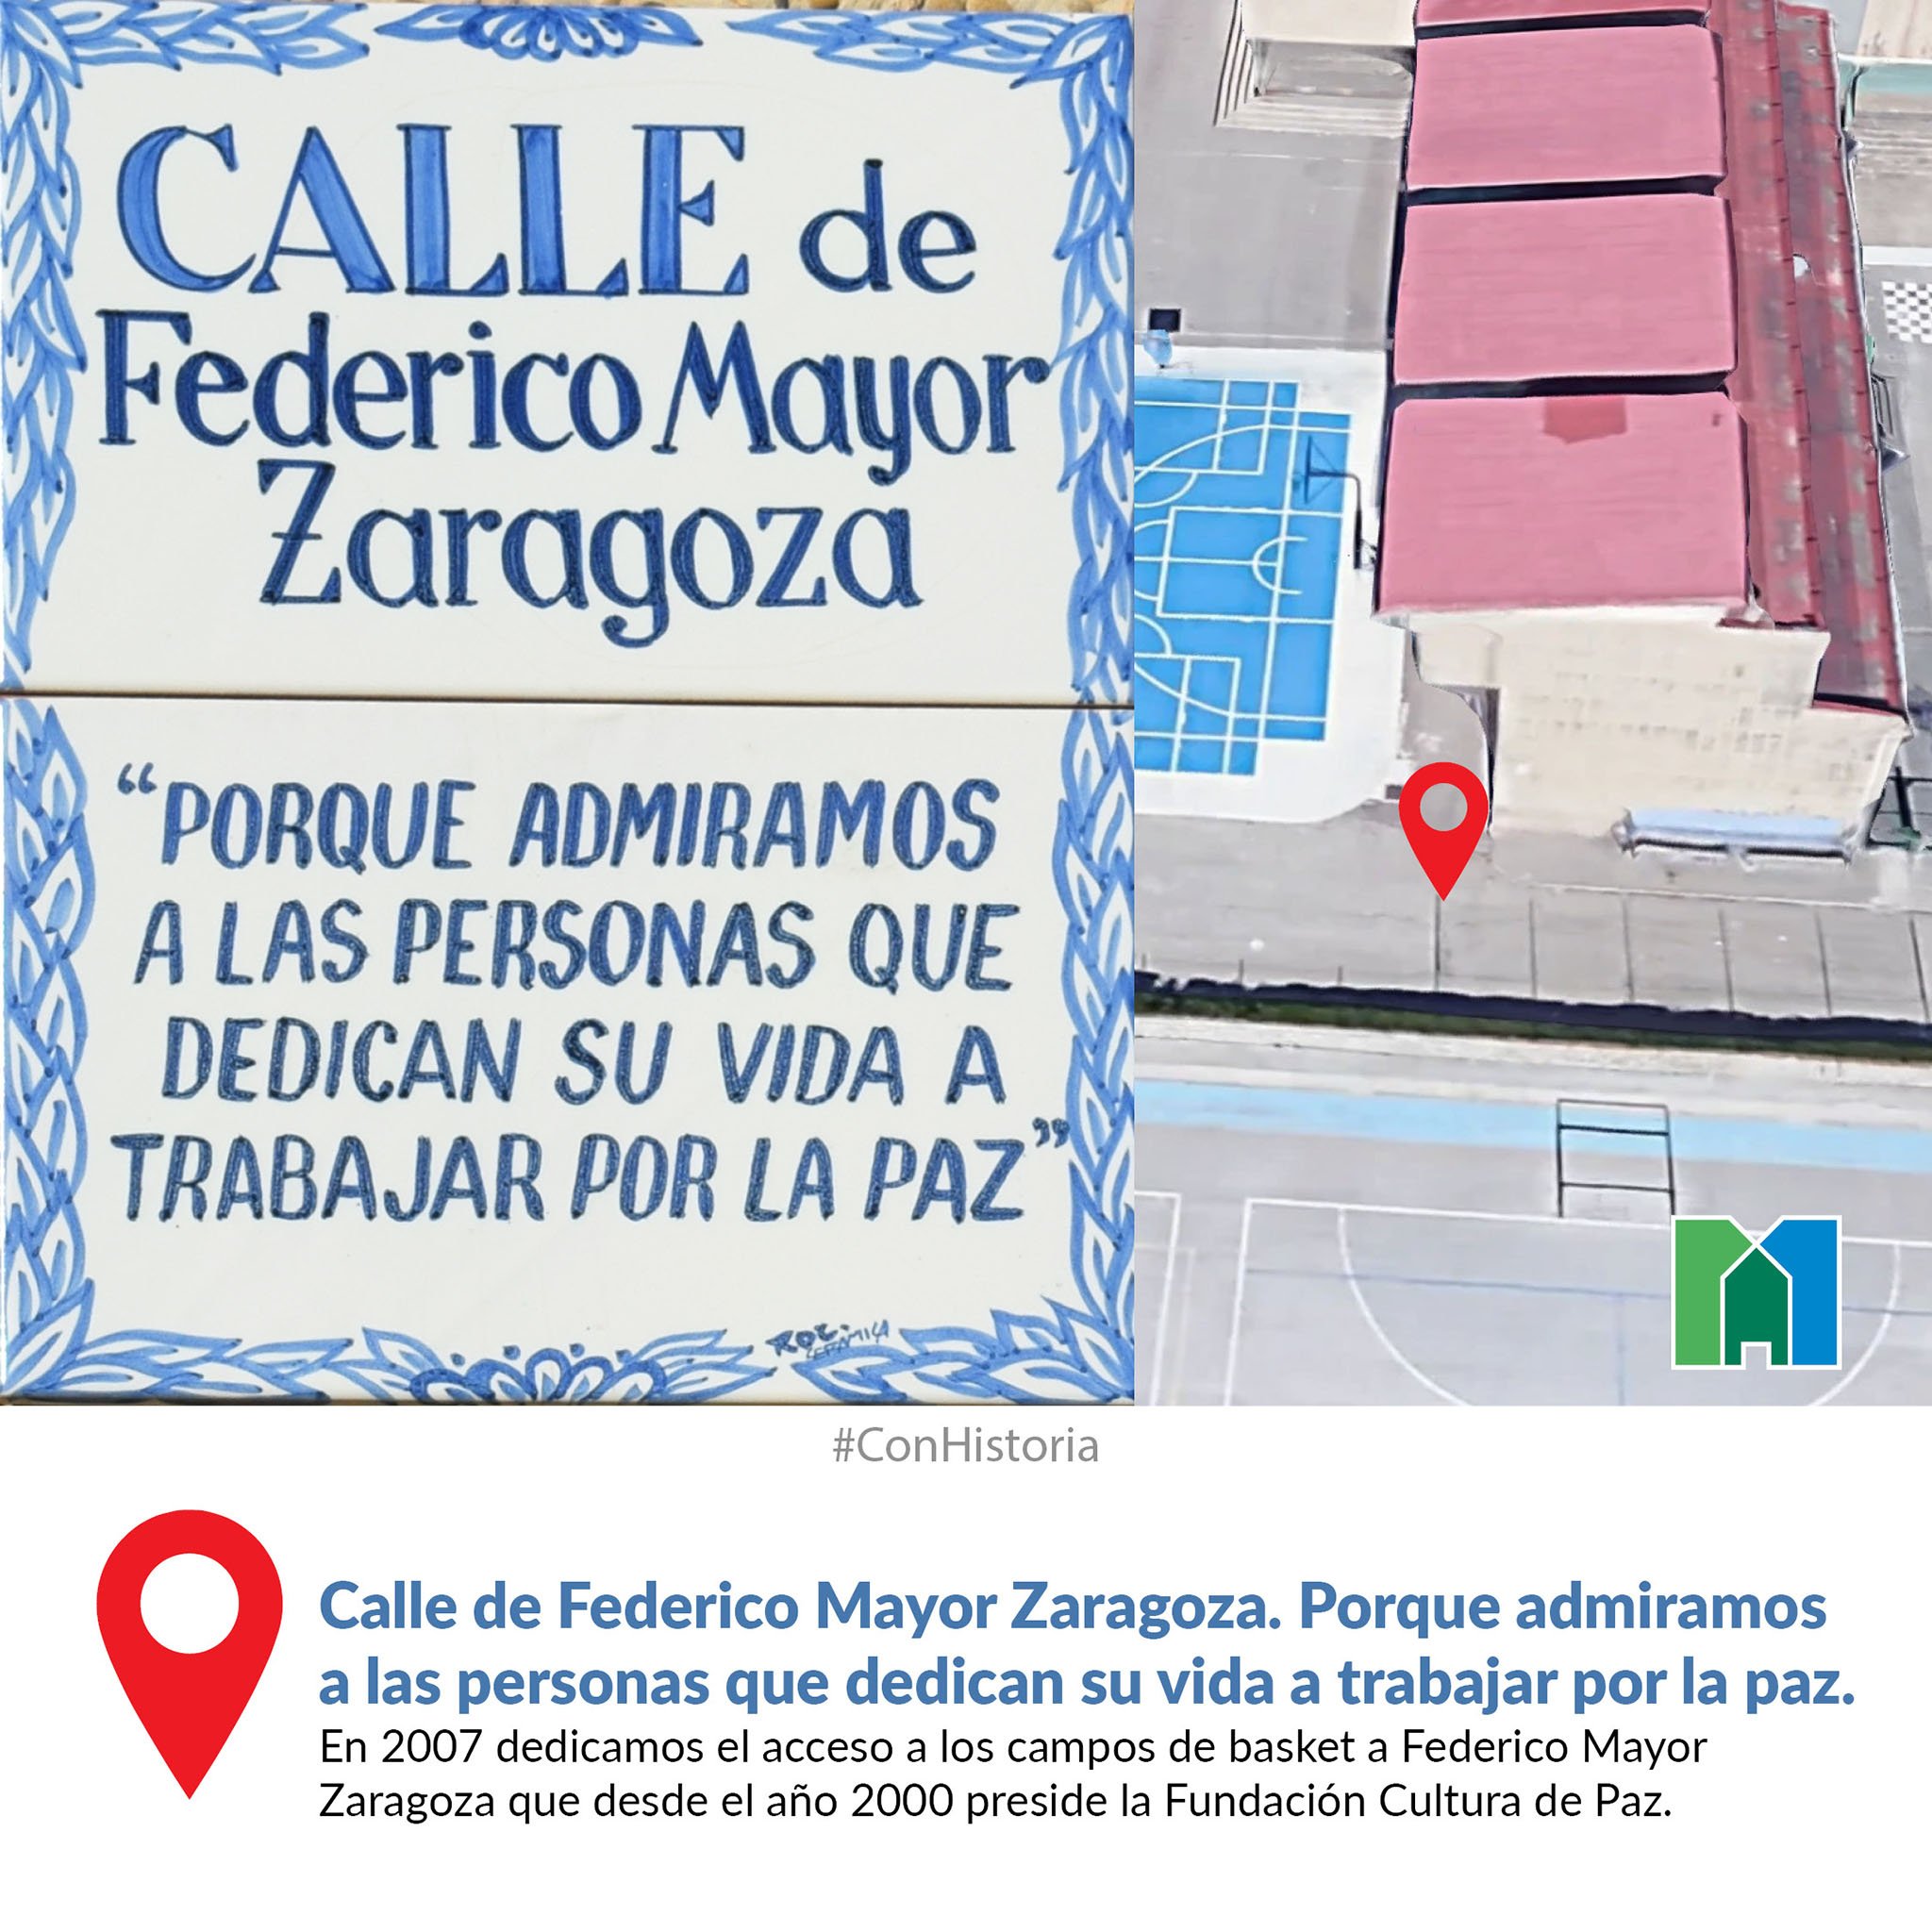 Calle de Federico Mayor Zaragoza. Porque admiramos a las personas que dedican su vida a trabajar por la paz.